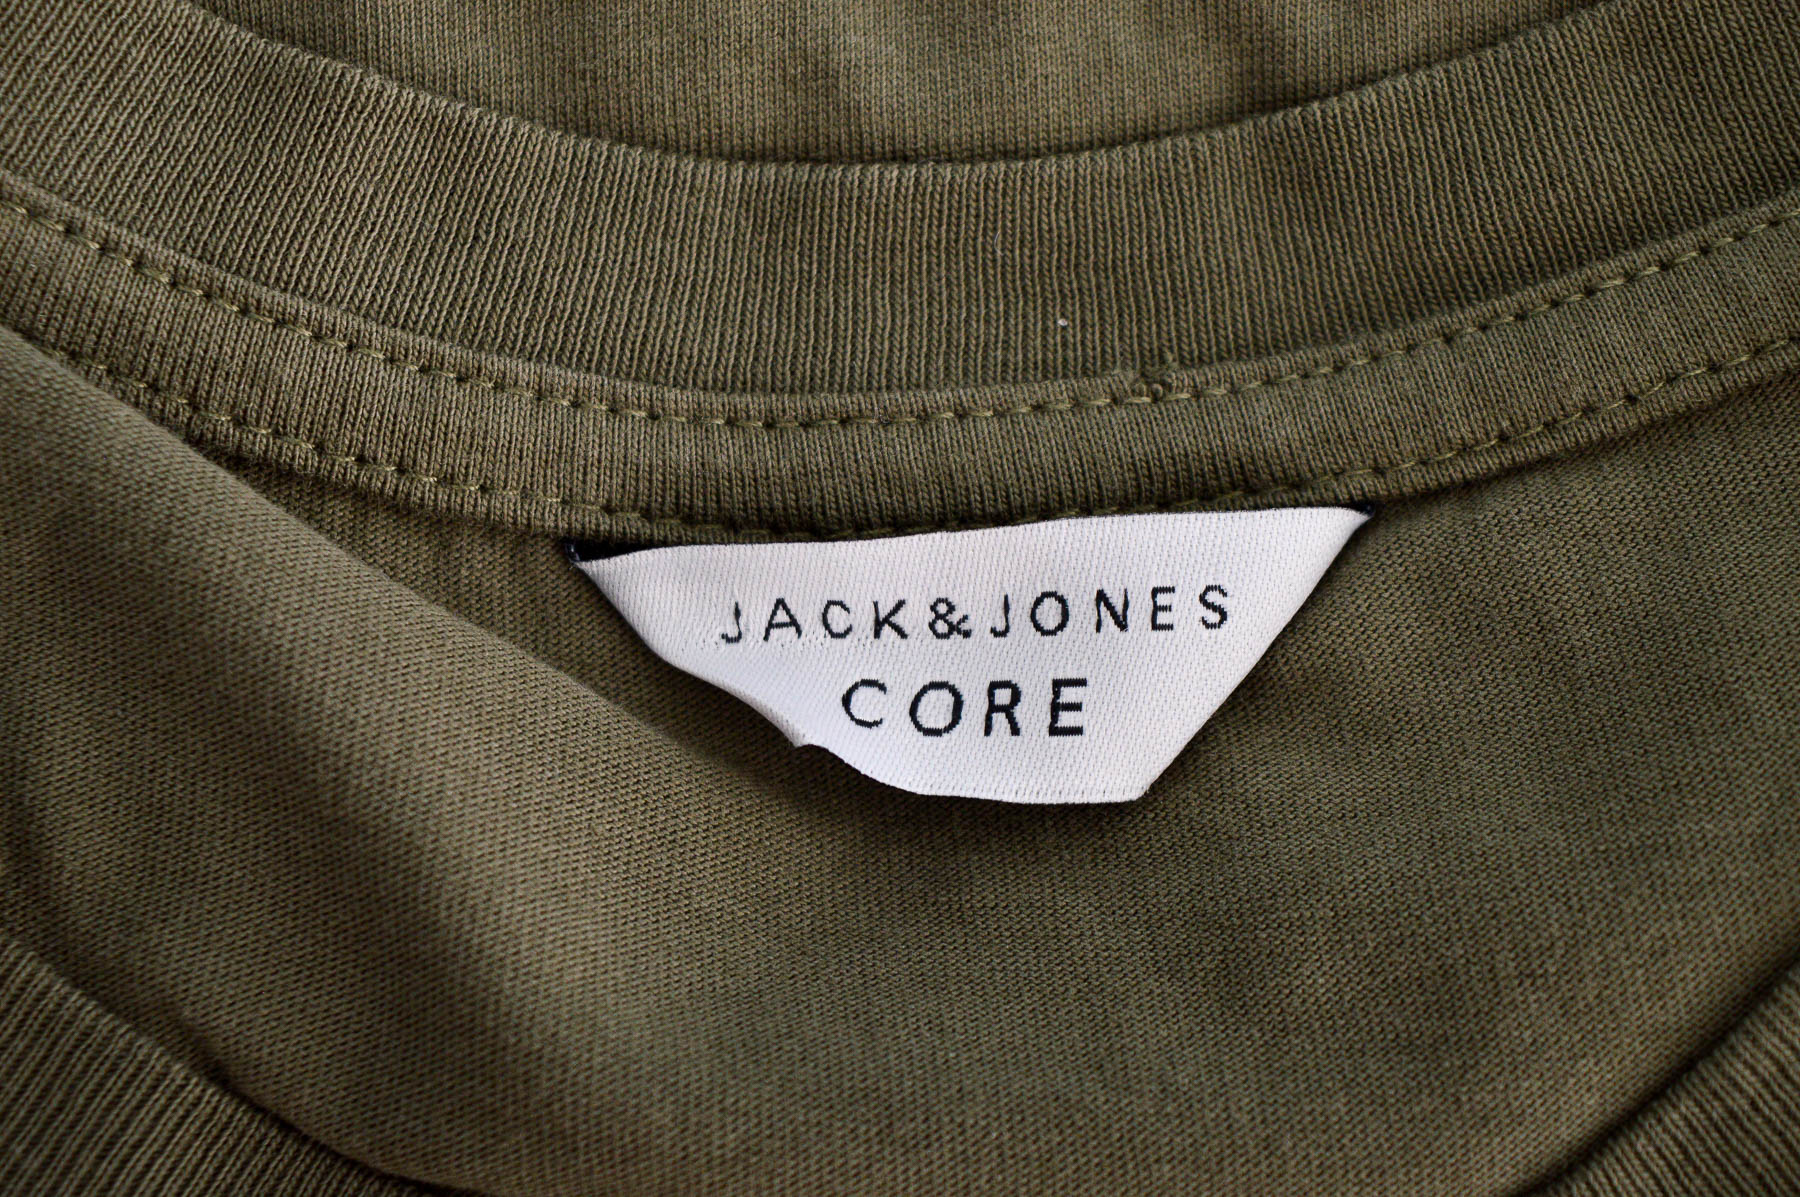 Men's blouse - CORE by Jack & Jones - 2